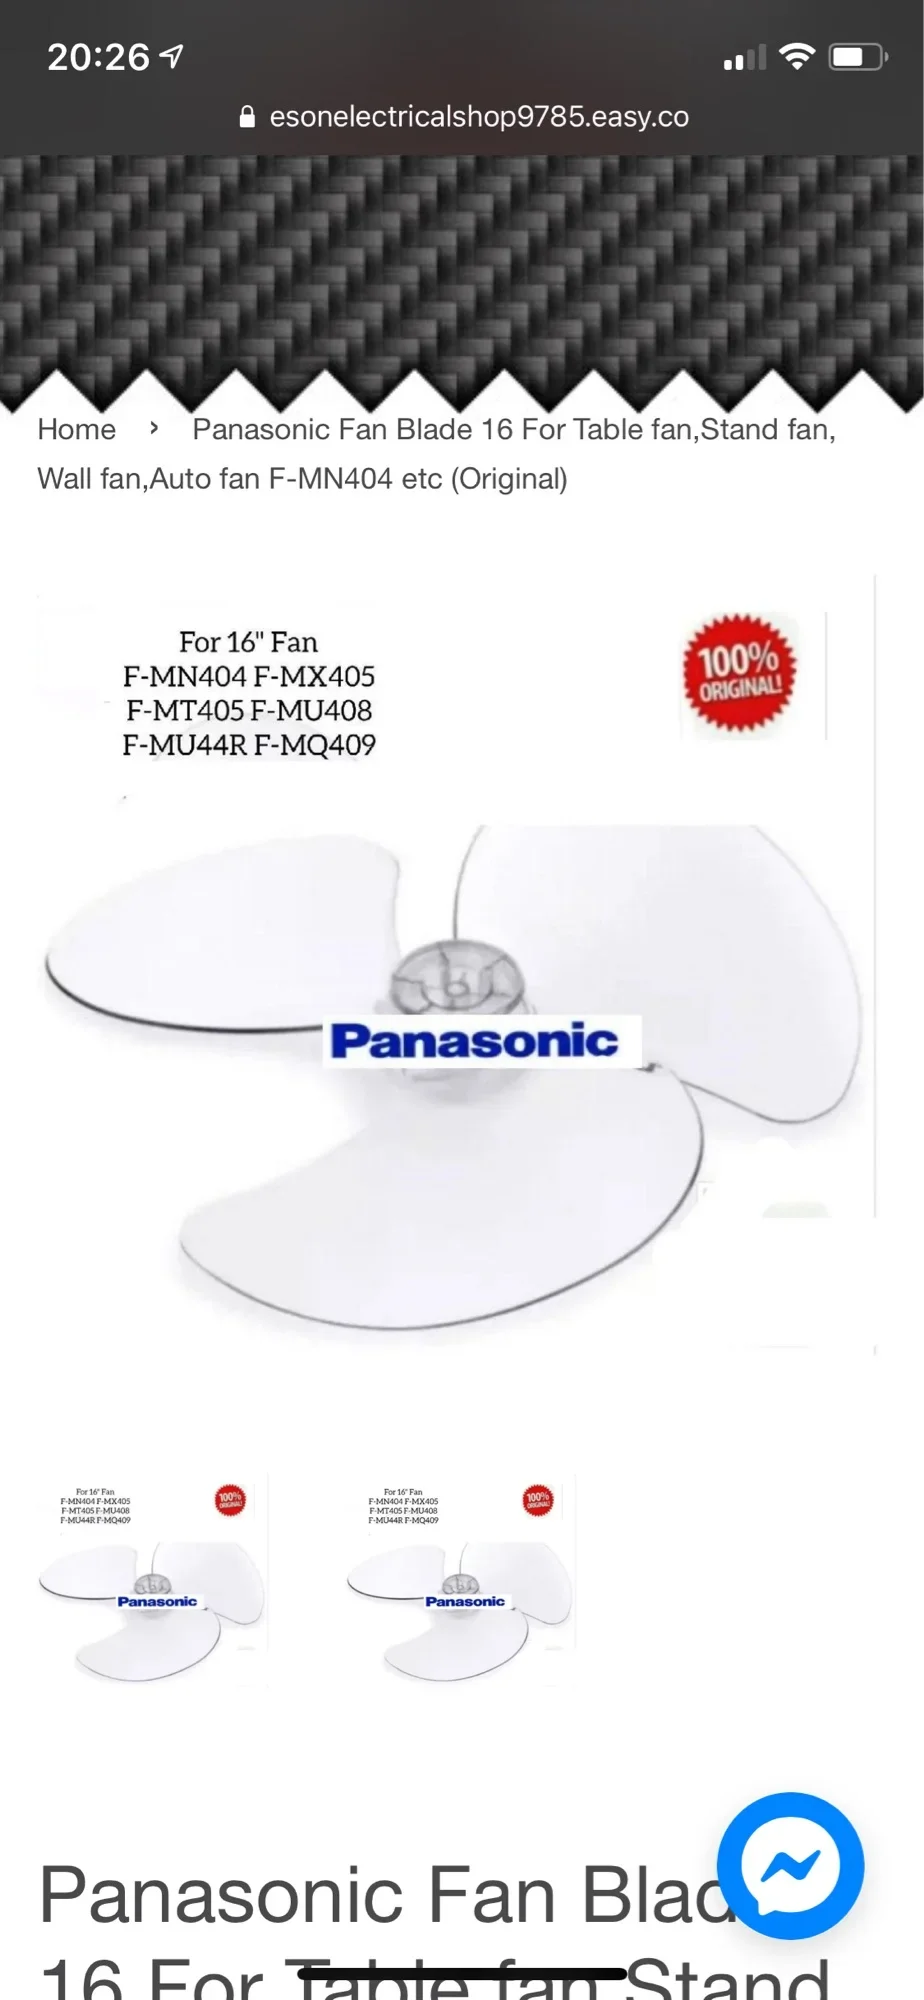 Panasonic Fan Blade 16 For Table fan,Stand fan, Wall fan,Auto fan F-MN404 etc (Original)